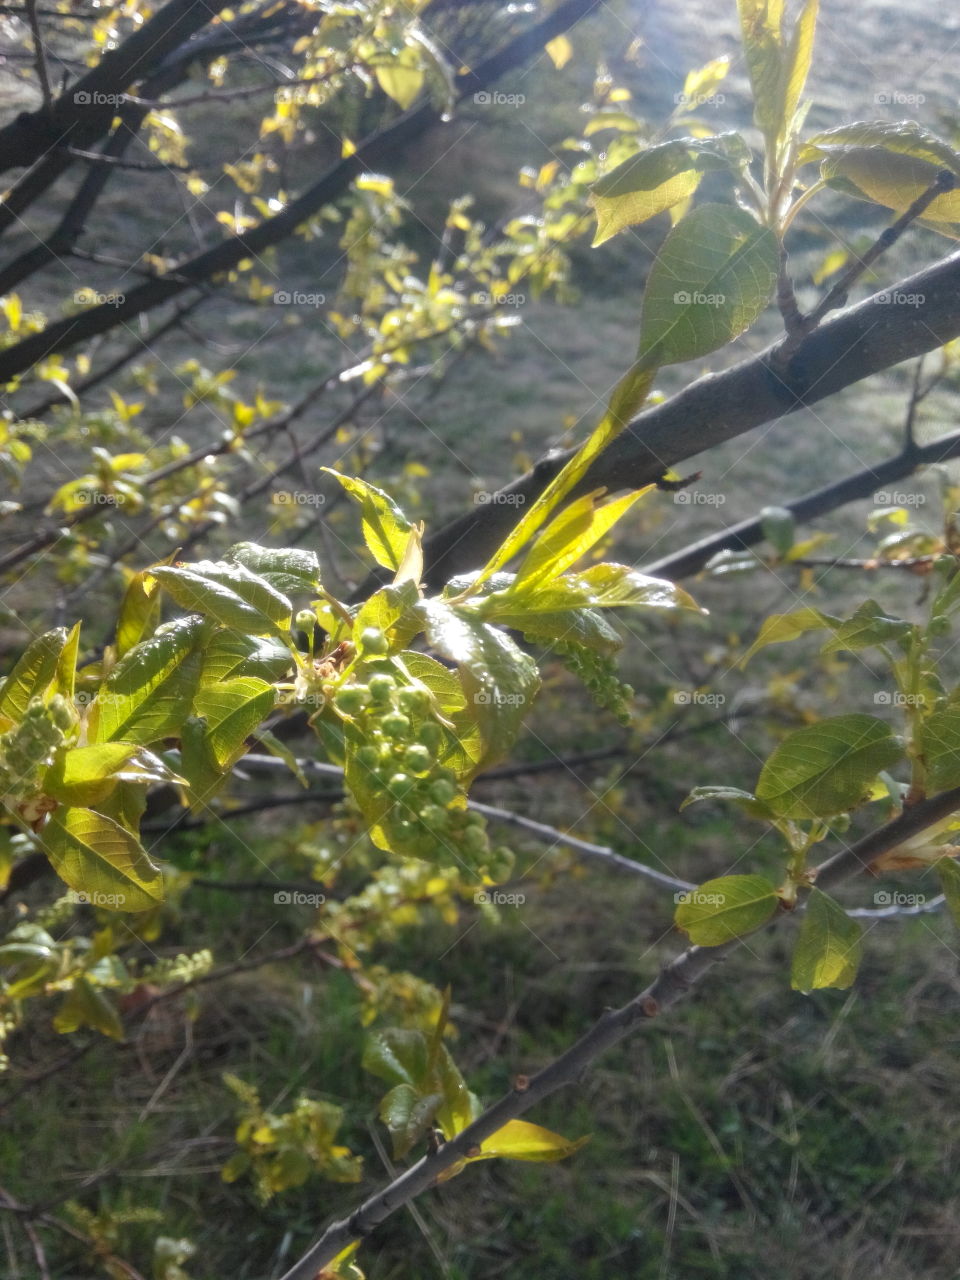 Sun light on spring leaves. Resplendent spring foliage